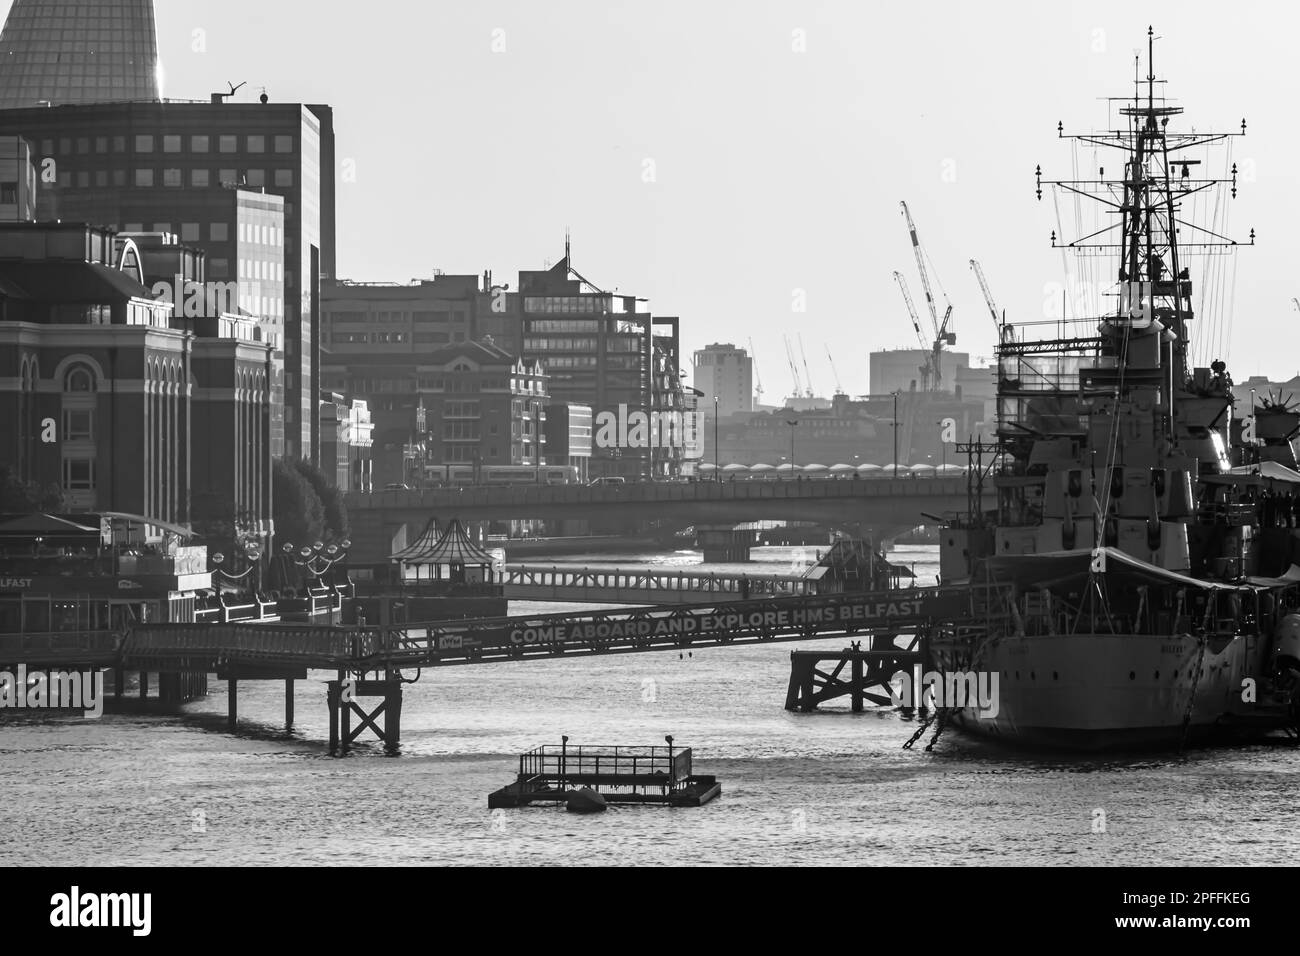 Londres, Royaume-Uni - 23 mai 2018 : vue sur le navire de guerre HMS Belfast, un musée flottant sur la Tamise et un beau coucher de soleil à Londres Banque D'Images